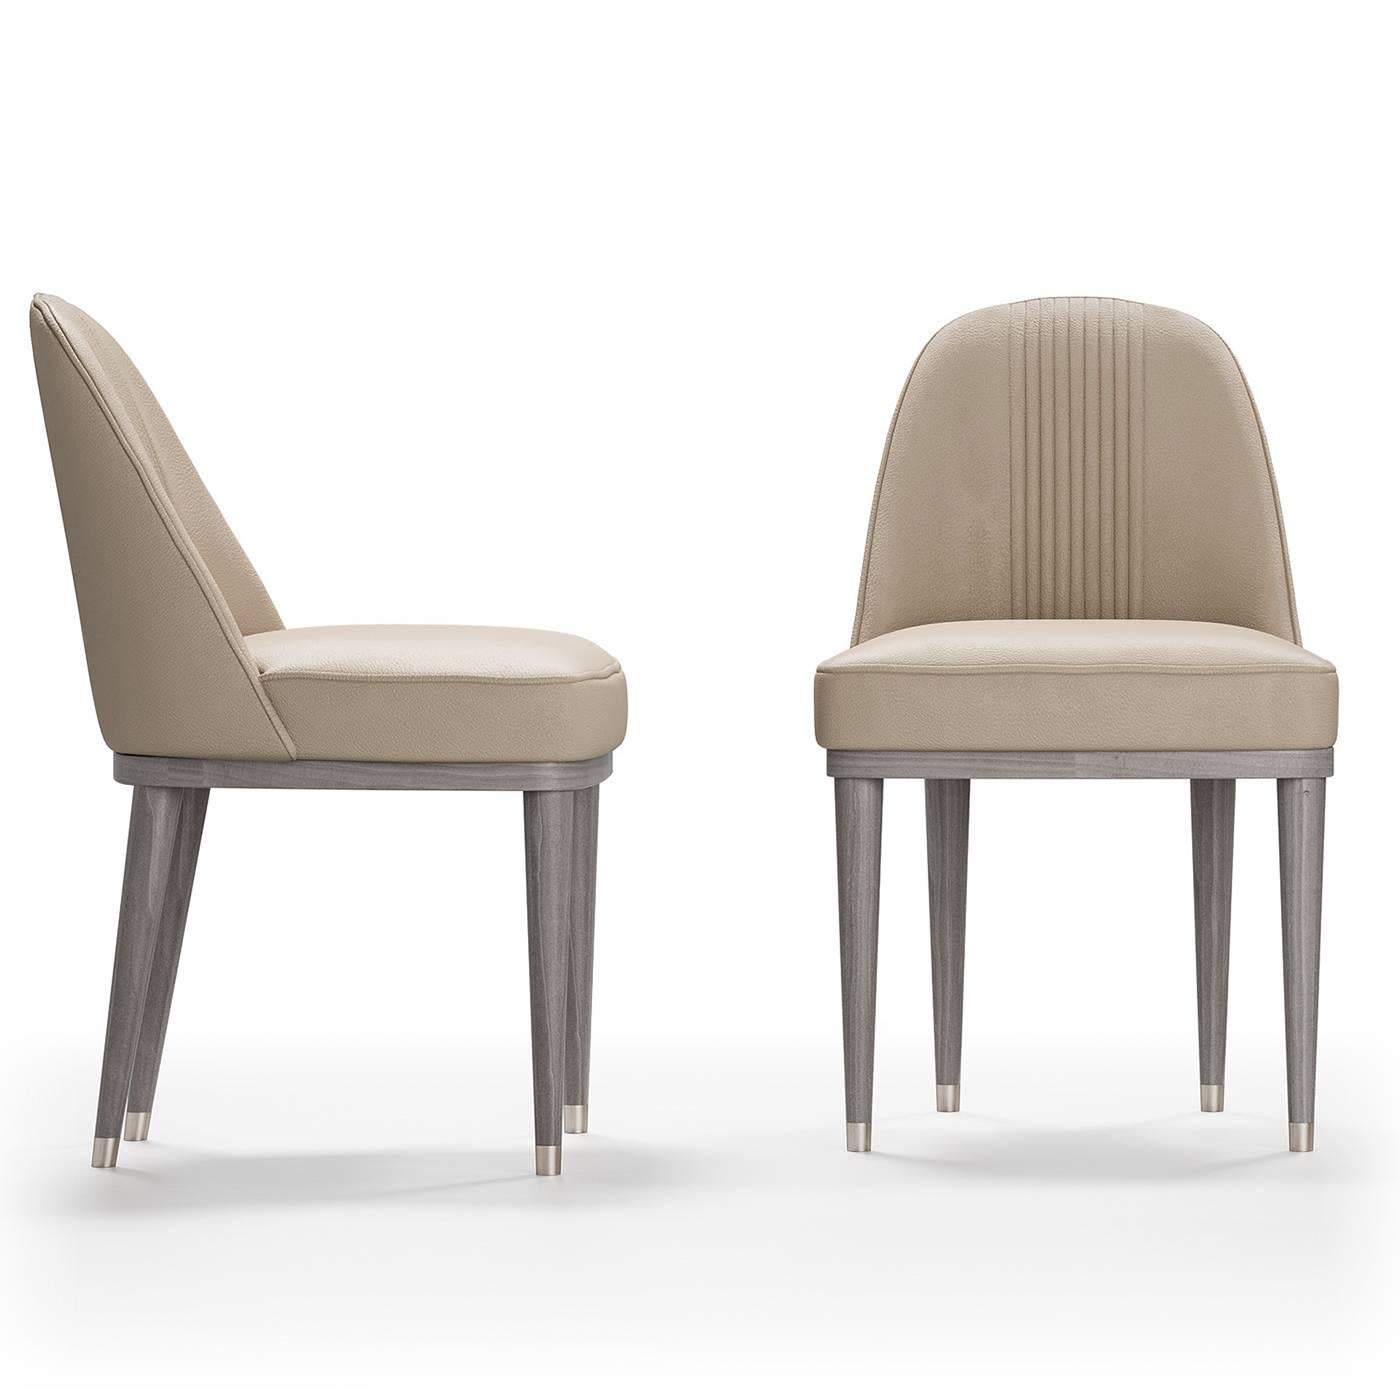 Des lignes épurées et des détails complexes caractérisent cette chaise intemporelle qui ajoutera un accent sophistiqué à une table de style moderne. Le cadre sans bras est soutenu par quatre pieds coniques et élancés avec des ferules en métal